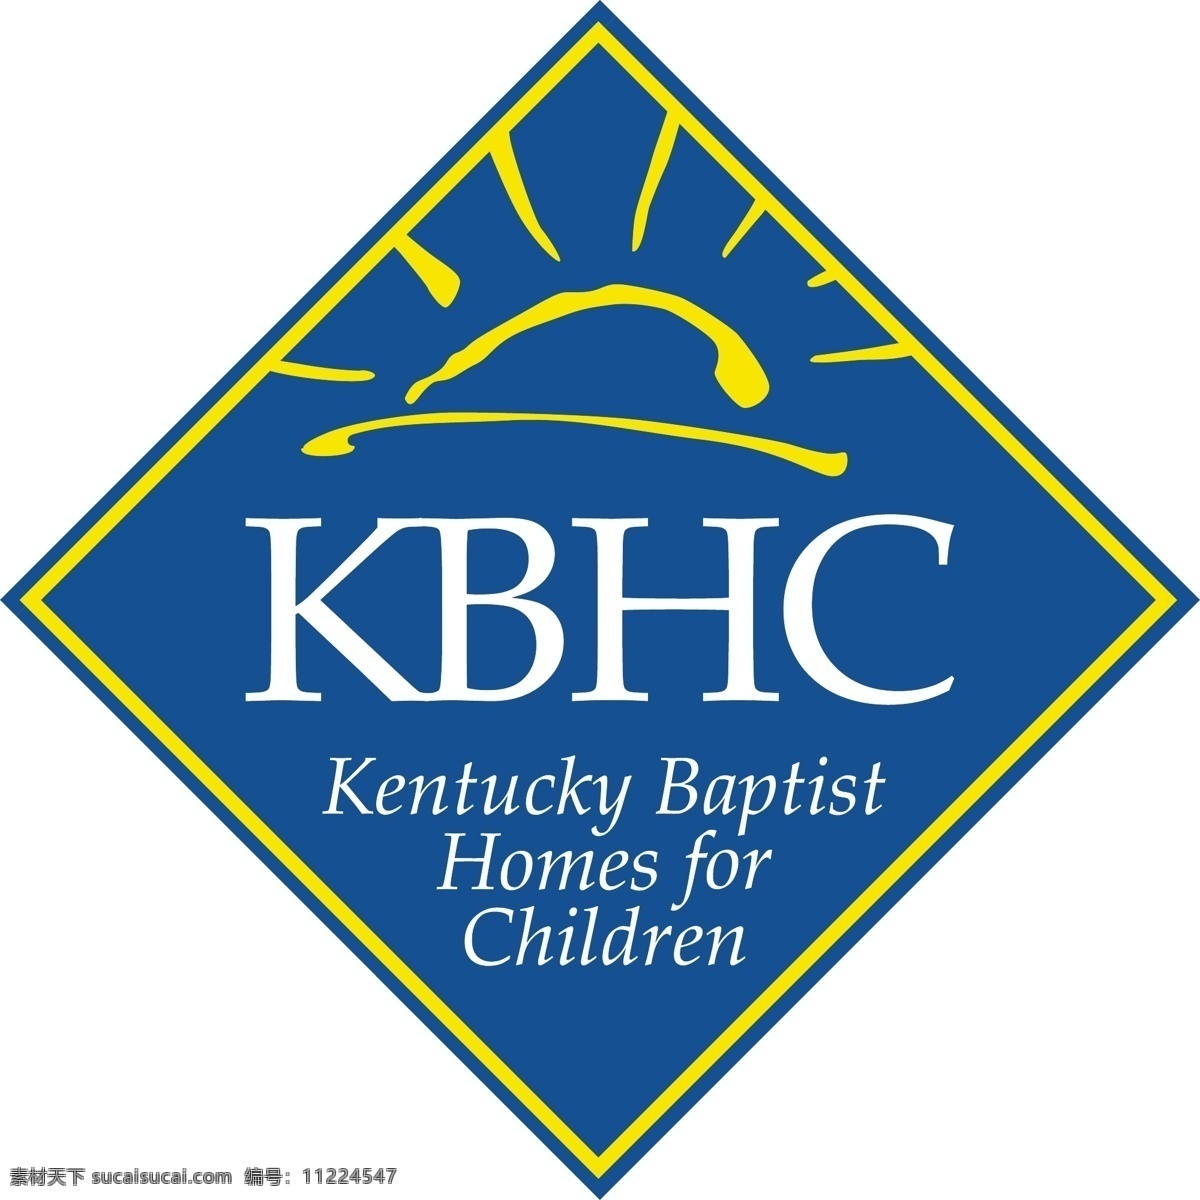 肯塔基 浸信会 孤儿院 儿童 无 标志 家园 免费 孩子 psd源文件 logo设计